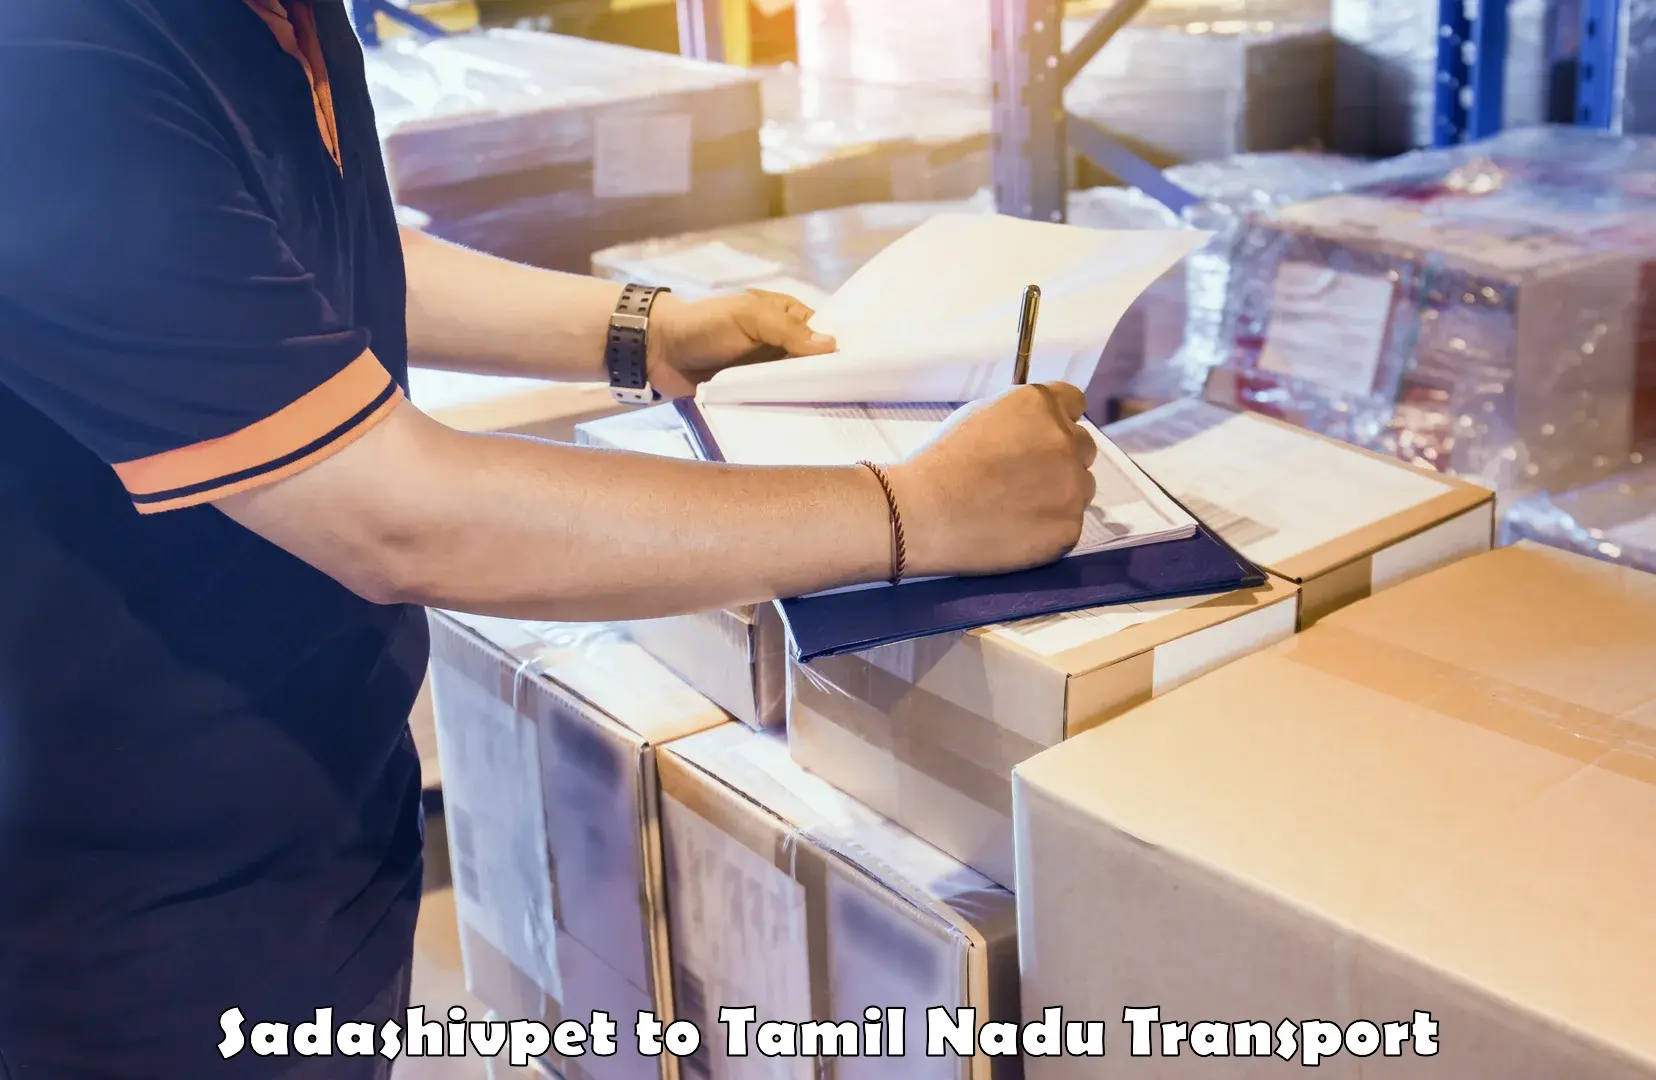 Land transport services Sadashivpet to NIT Tiruchirapalli